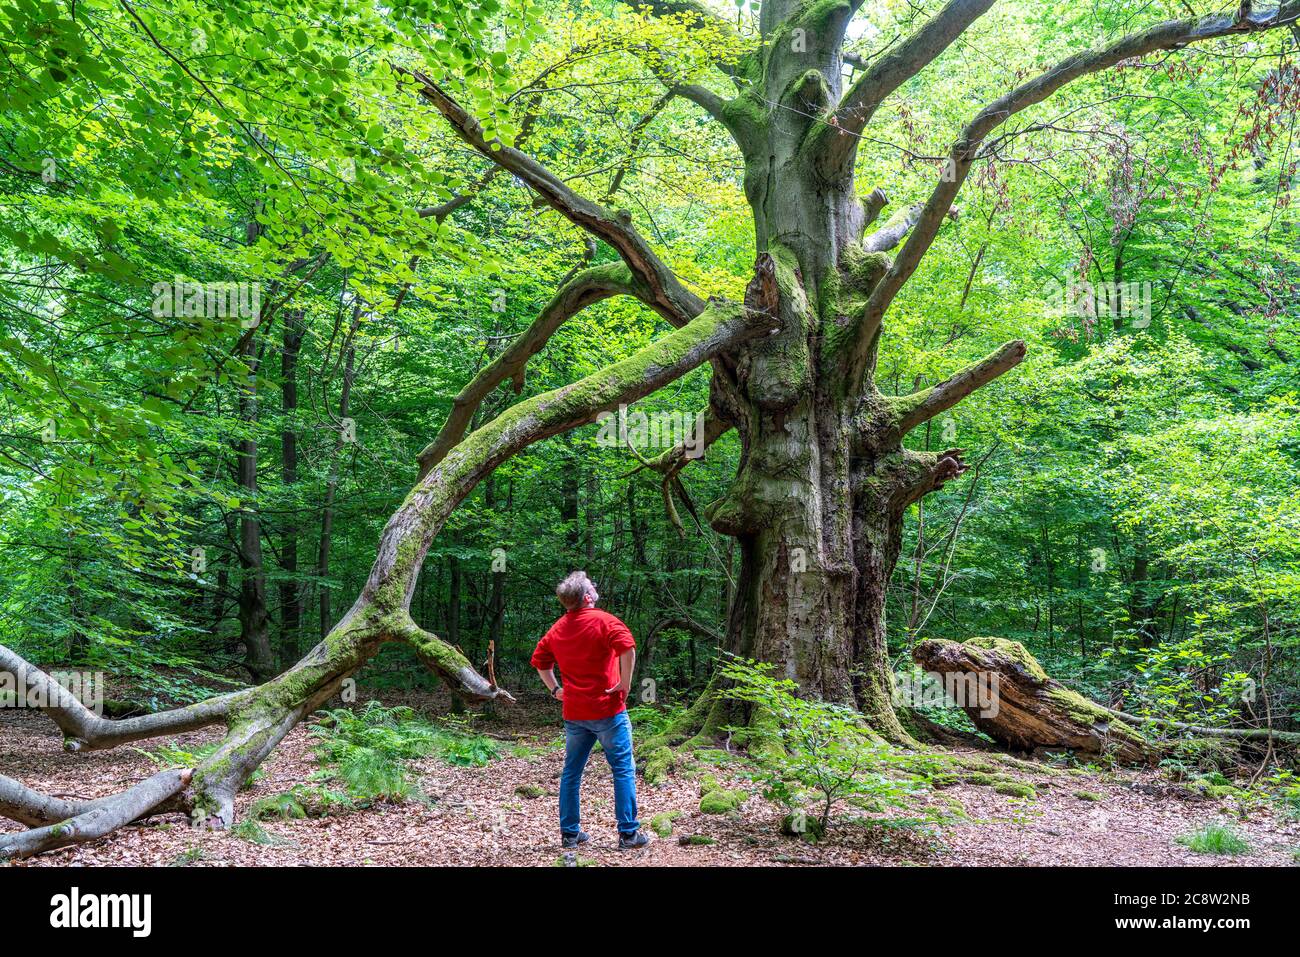 El bosque primigenio Sababurg, o también bosque primigenio en el Reinhardswald, es un biotope de aproximadamente 95 ha bajo protección de la naturaleza y el paisaje, w Foto de stock